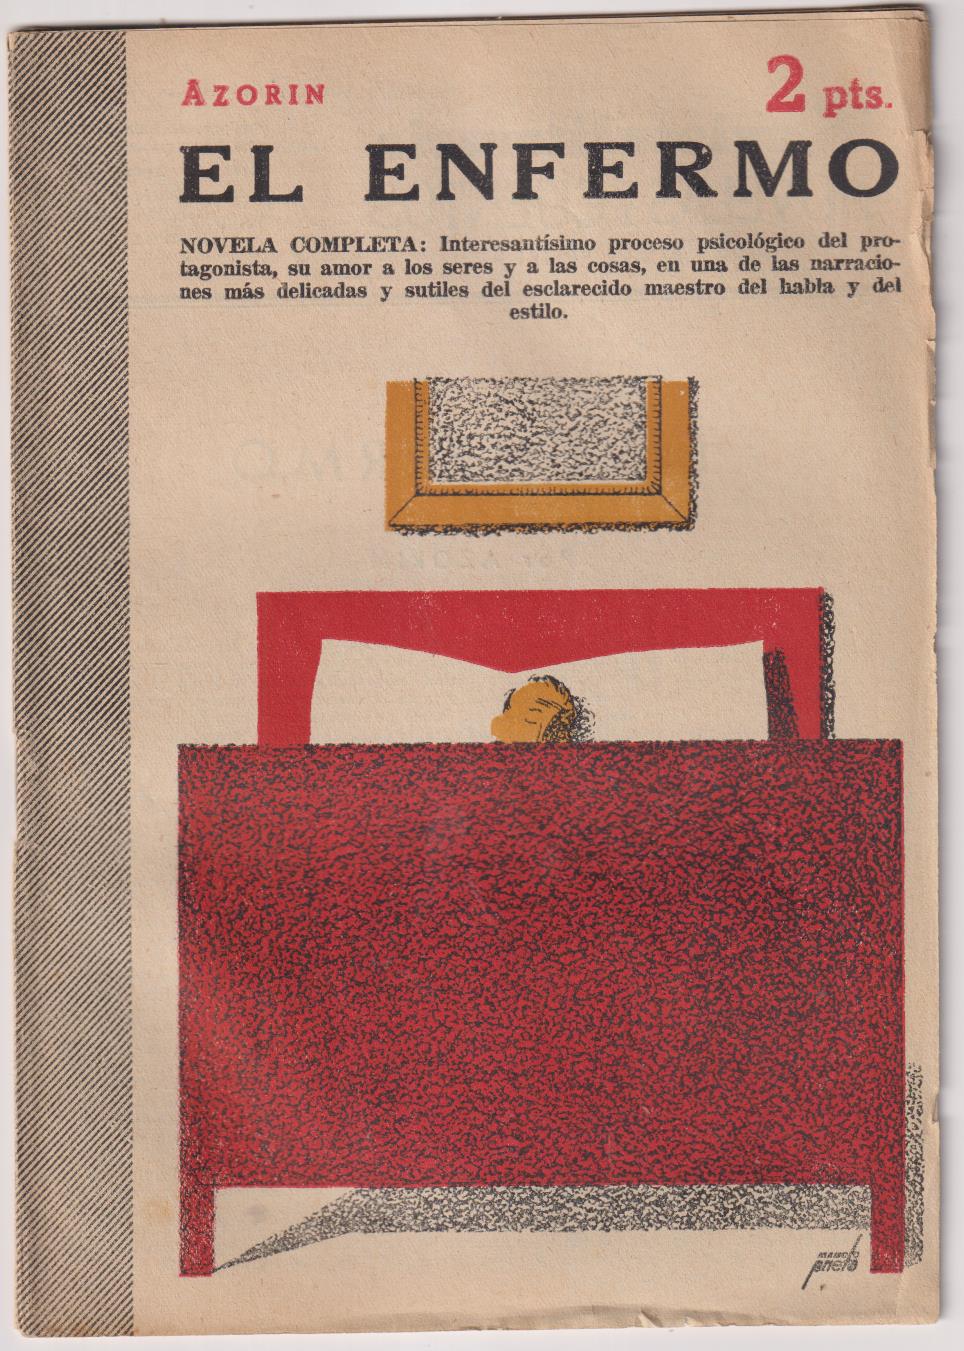 Revista literaria Novelas y Cuentos nº 1264. El Enfermo por Azorín, Año 1955